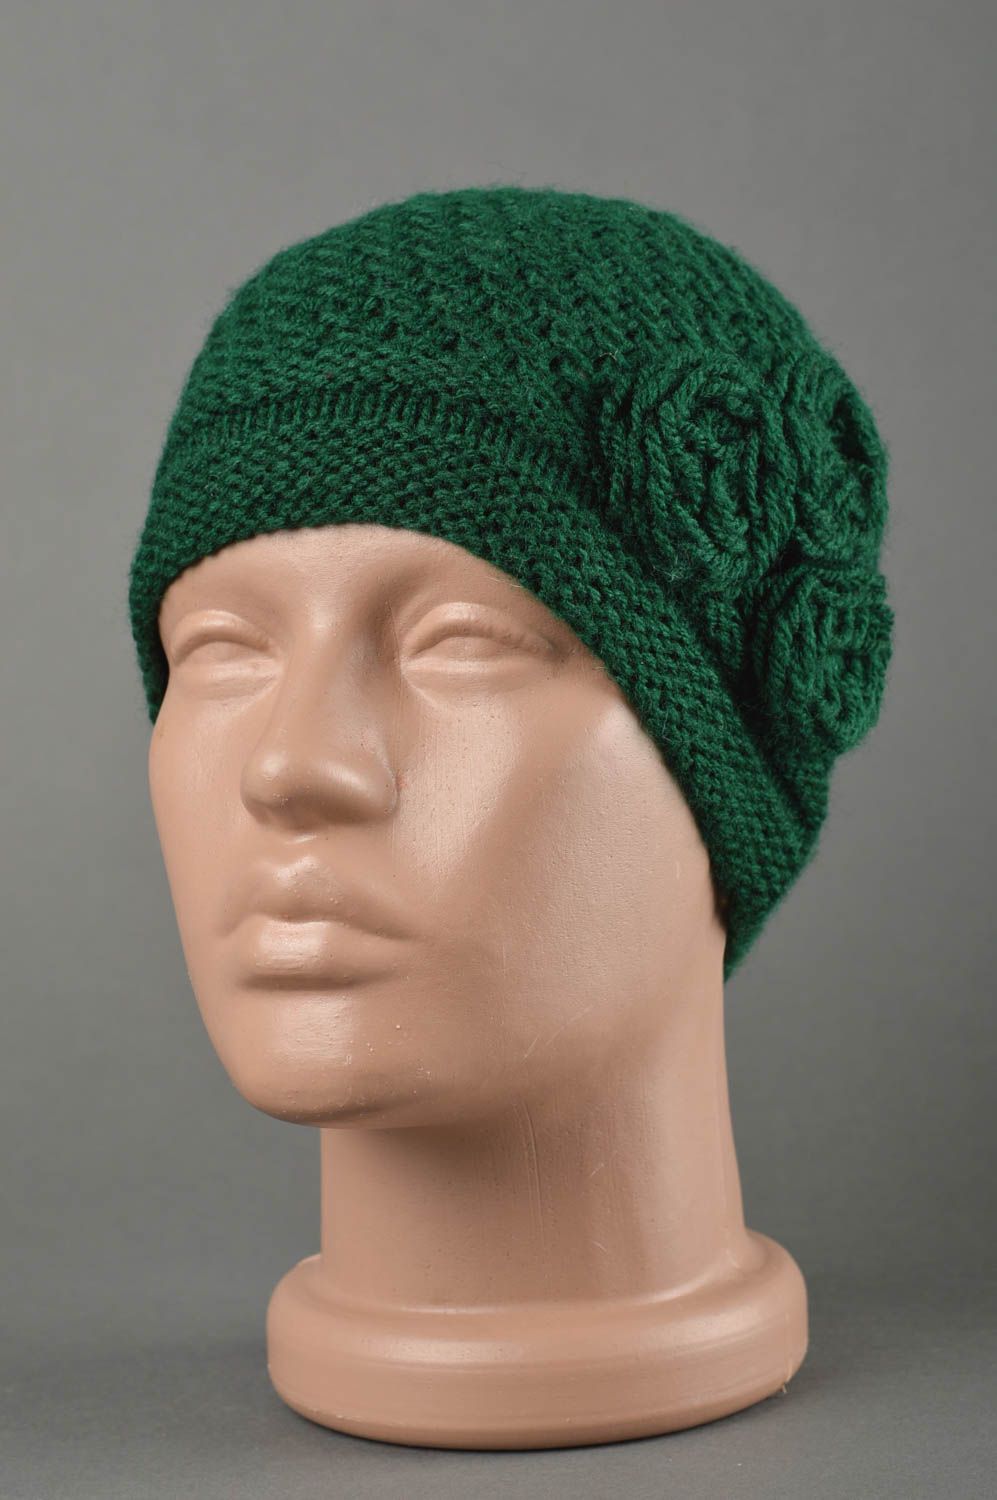 Bonnet au crochet fait main Chapeau tricot chaud vert d'hiver Vêtement enfant photo 1